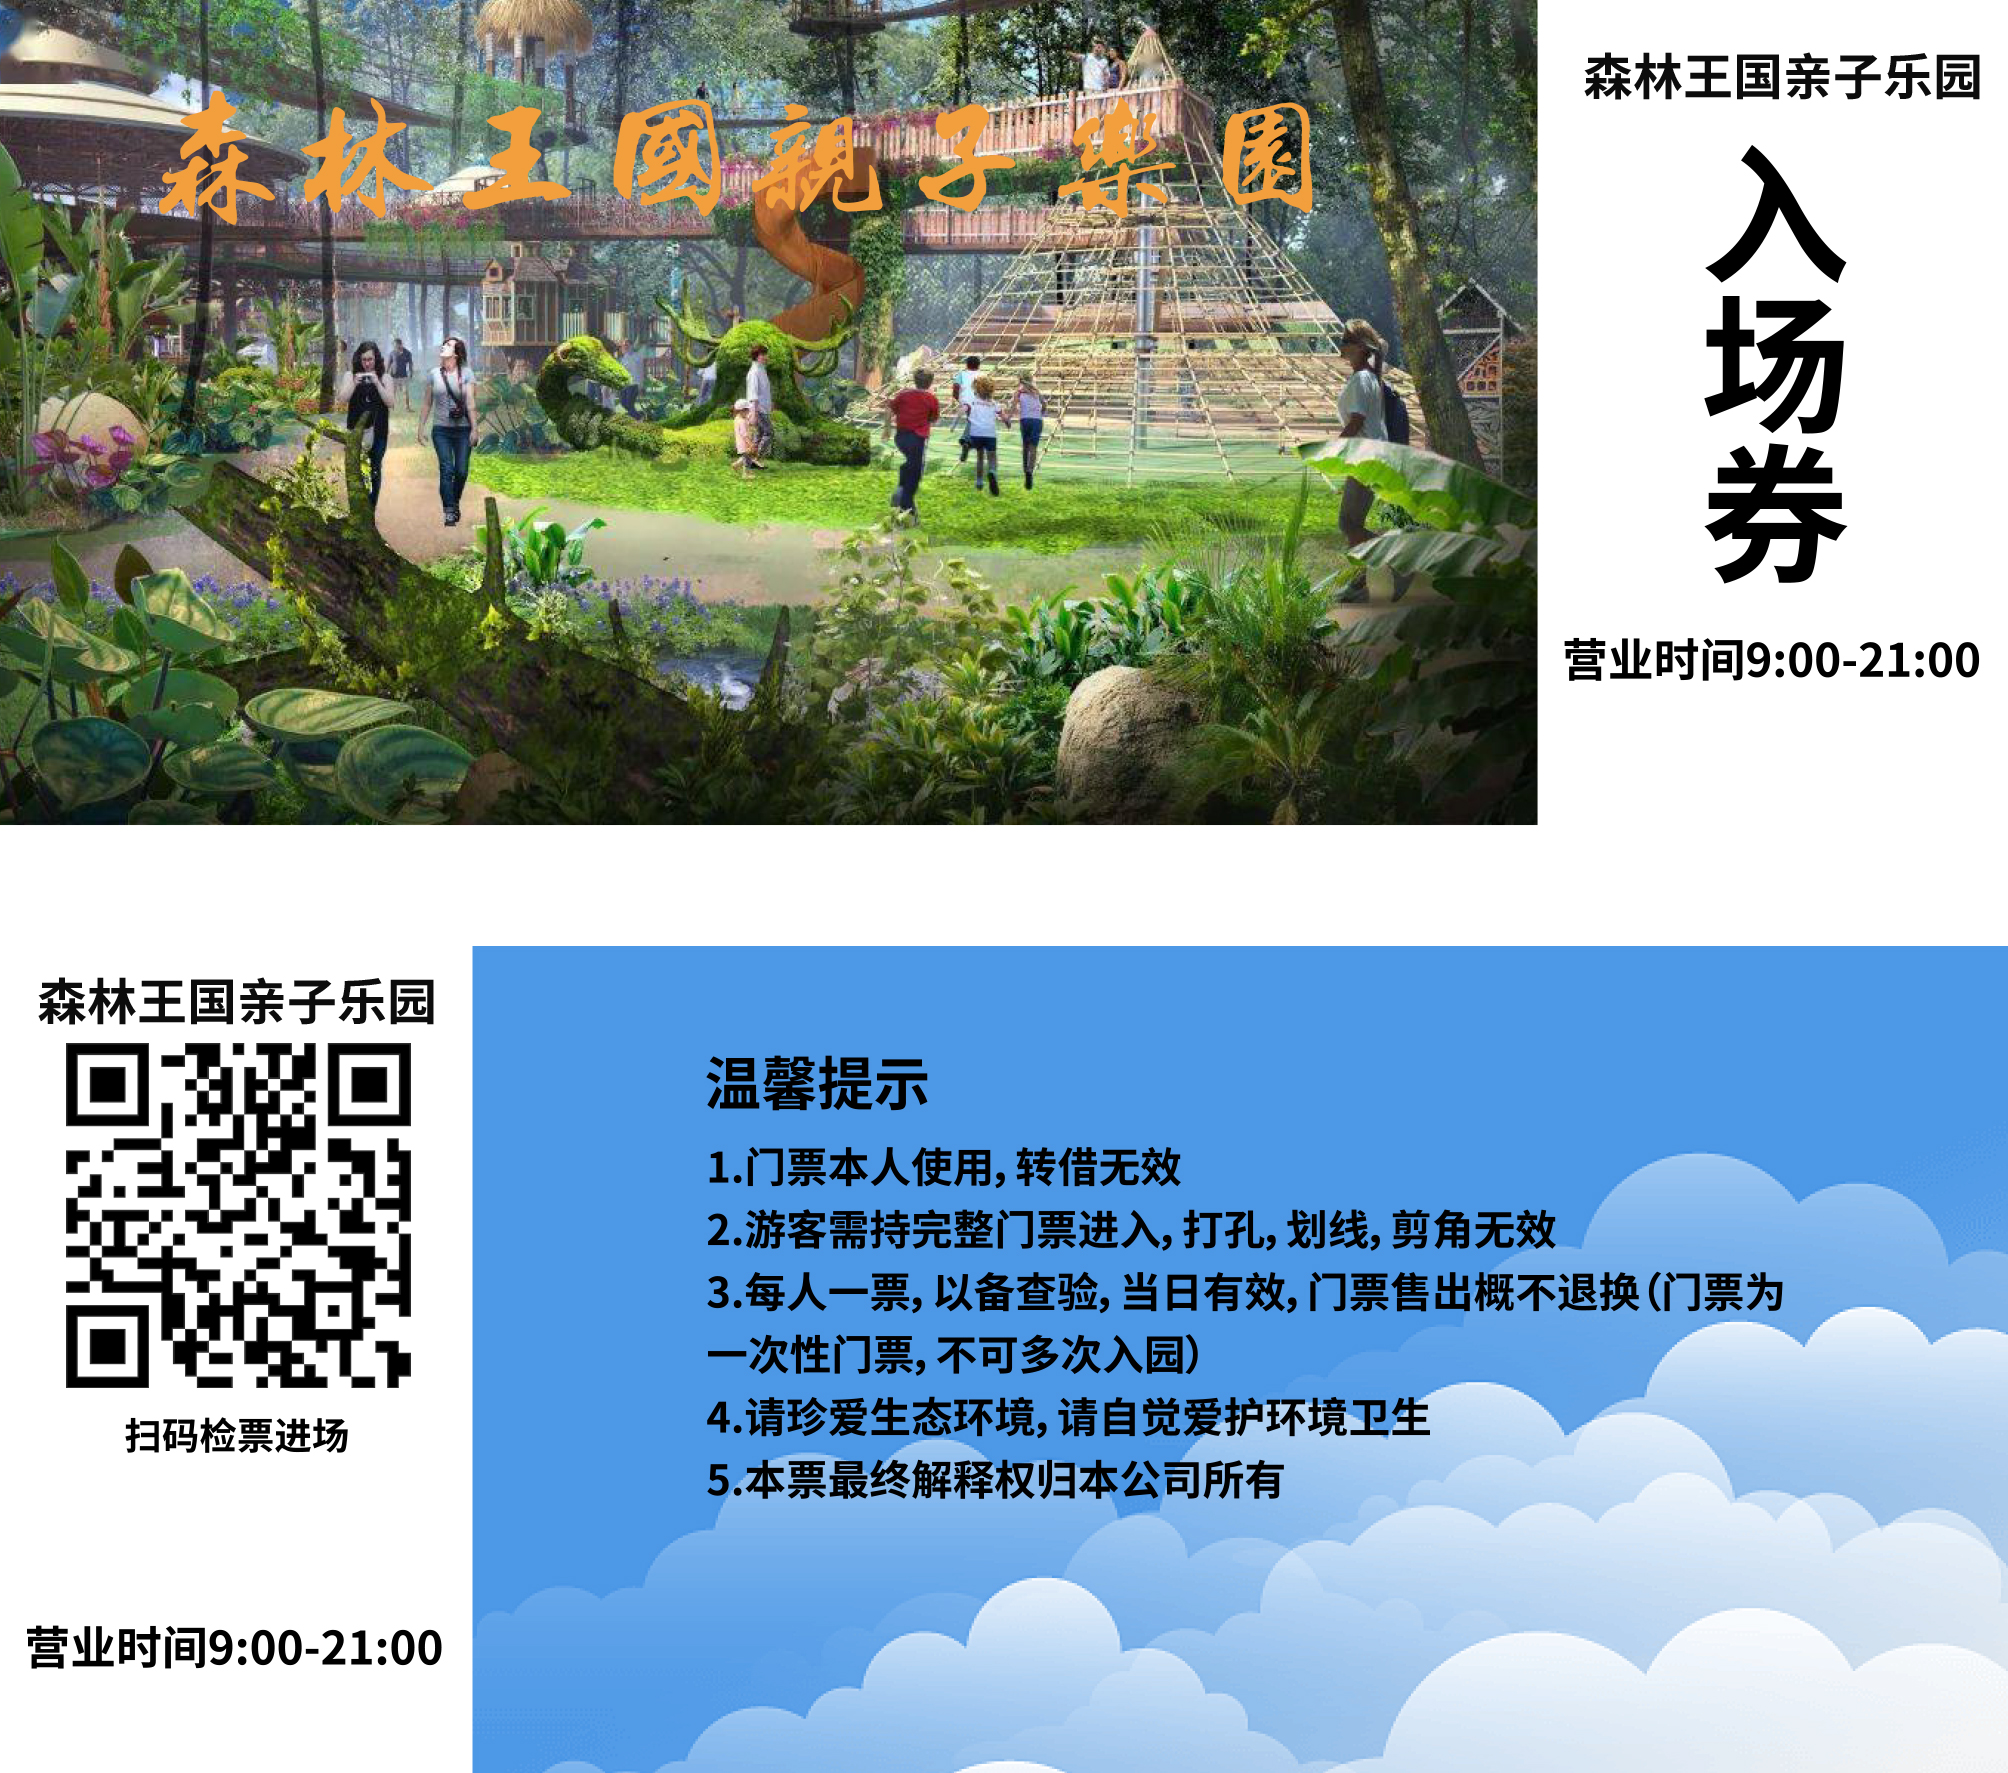 启点签约深圳市龙岗区森林王国亲子乐园票务系统